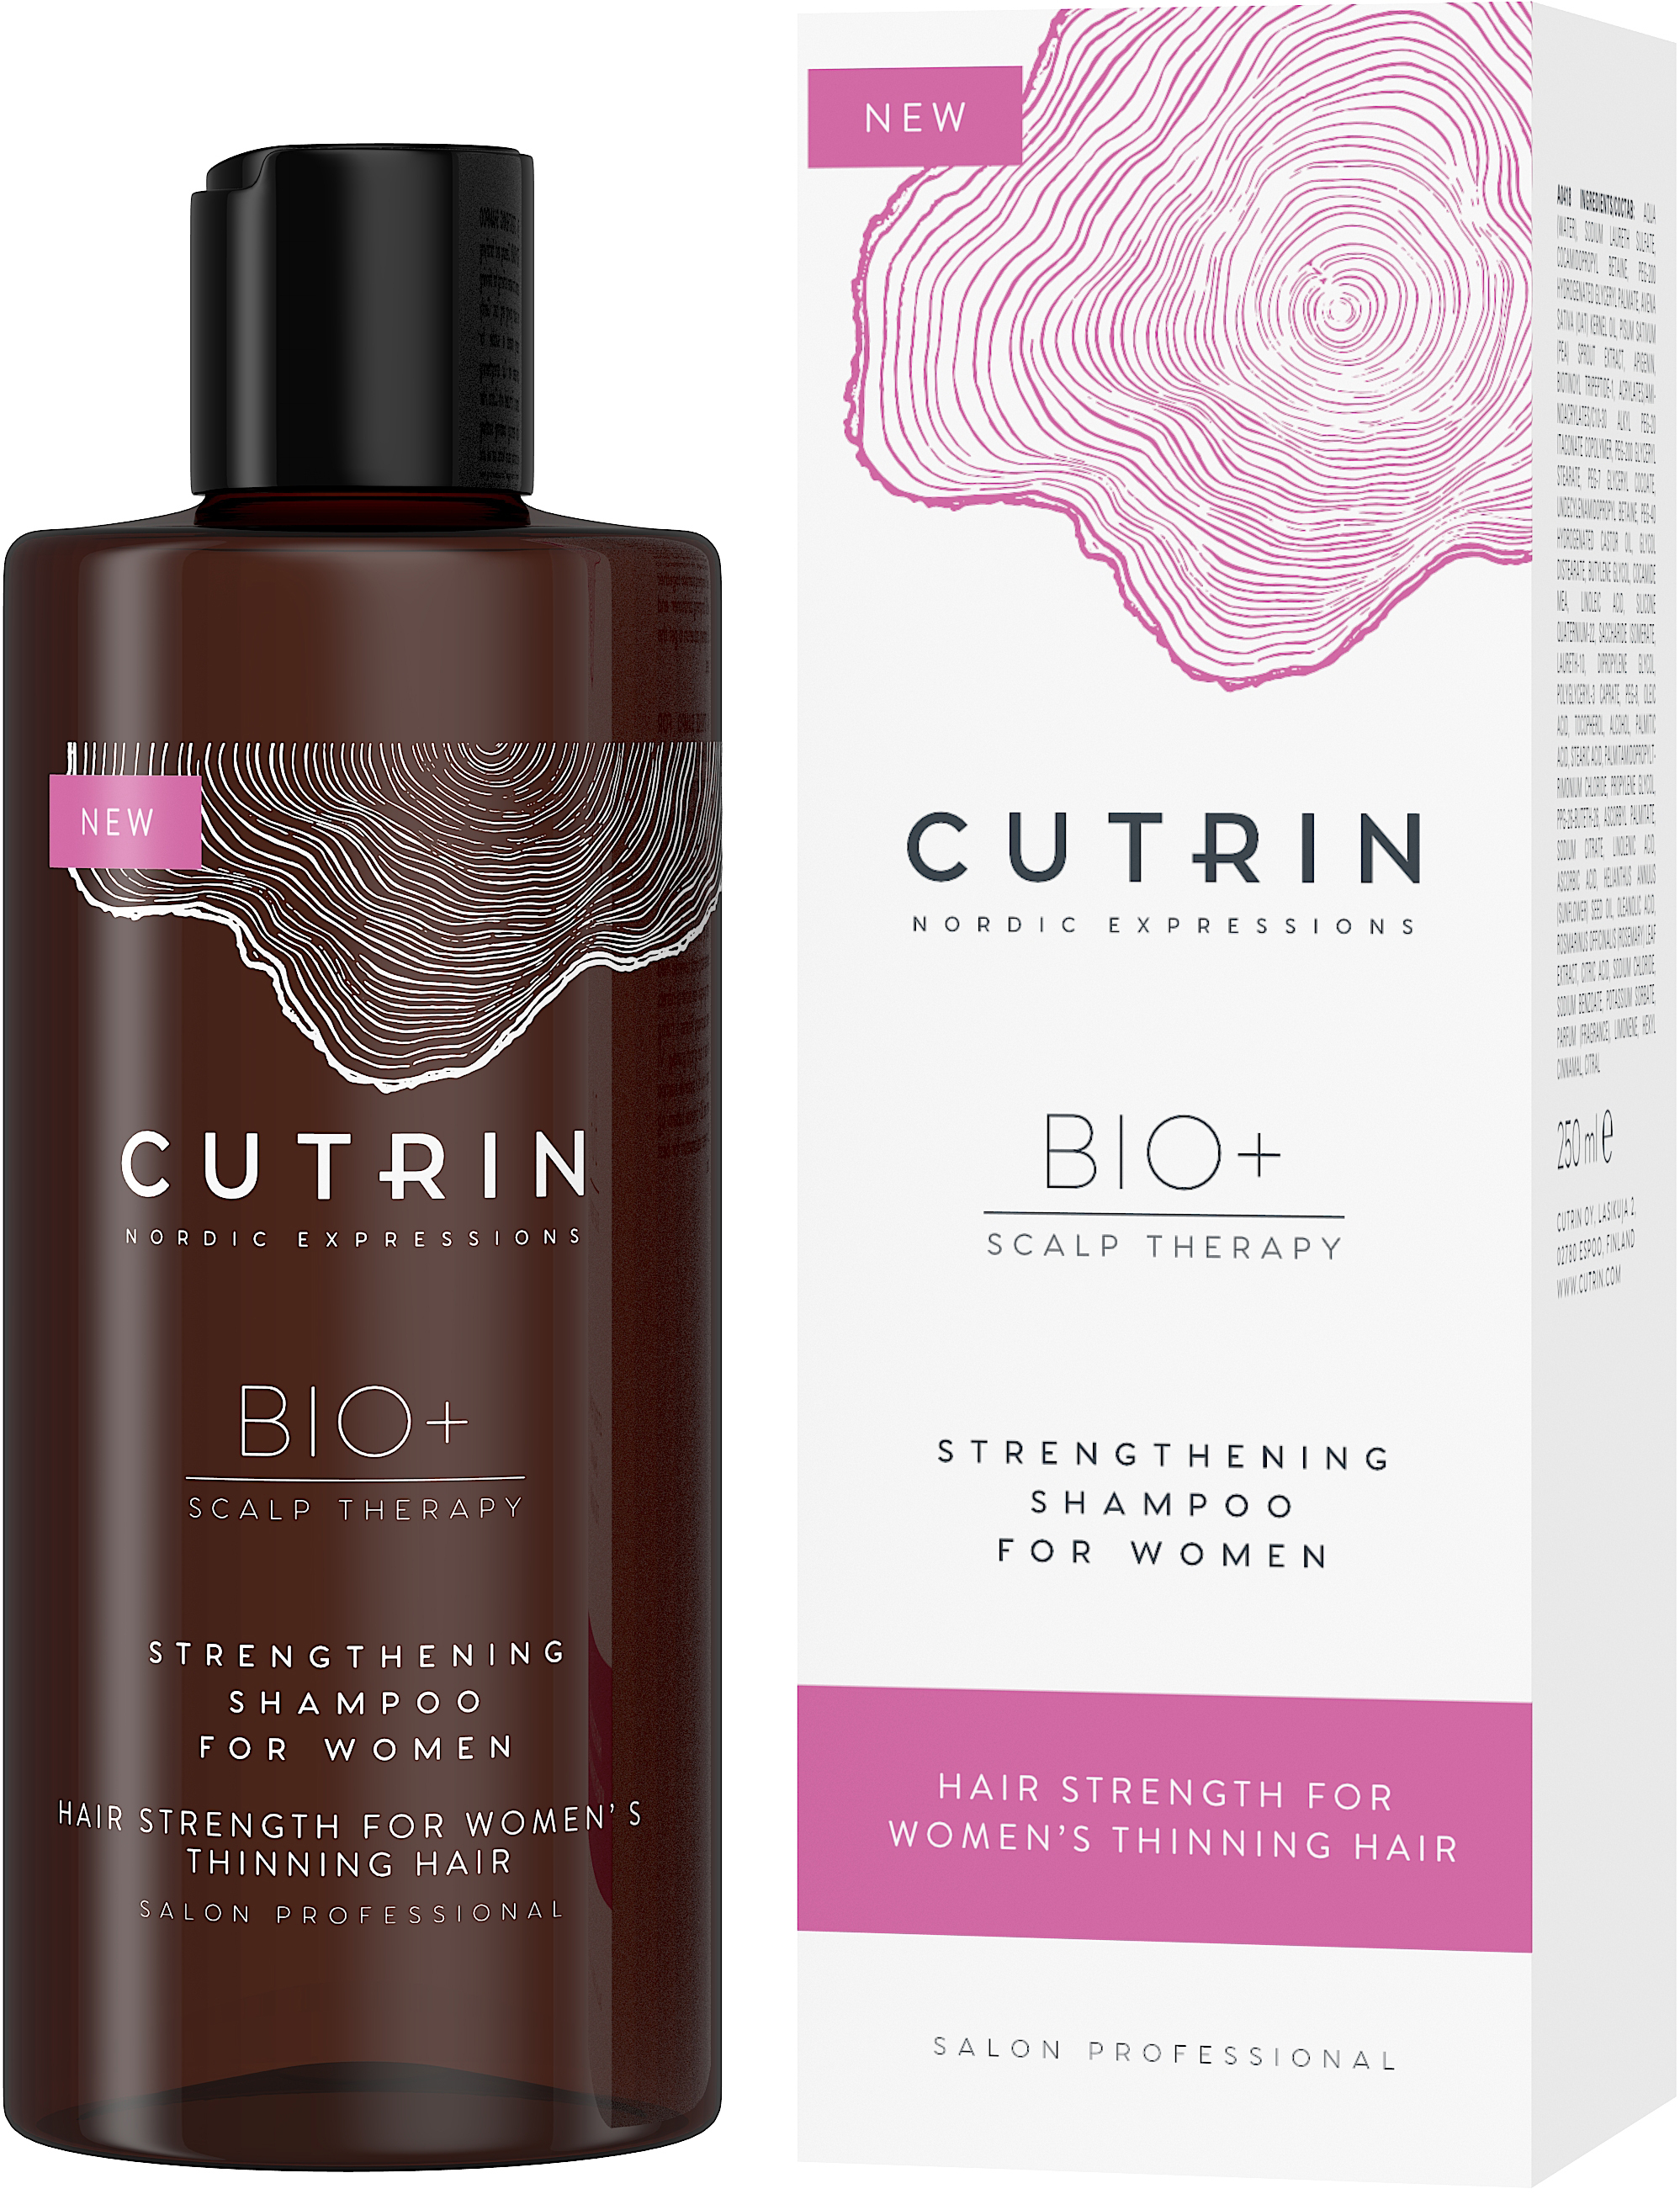 Cutrin Bio+ Strengthening Shampoo for Women 250 ml